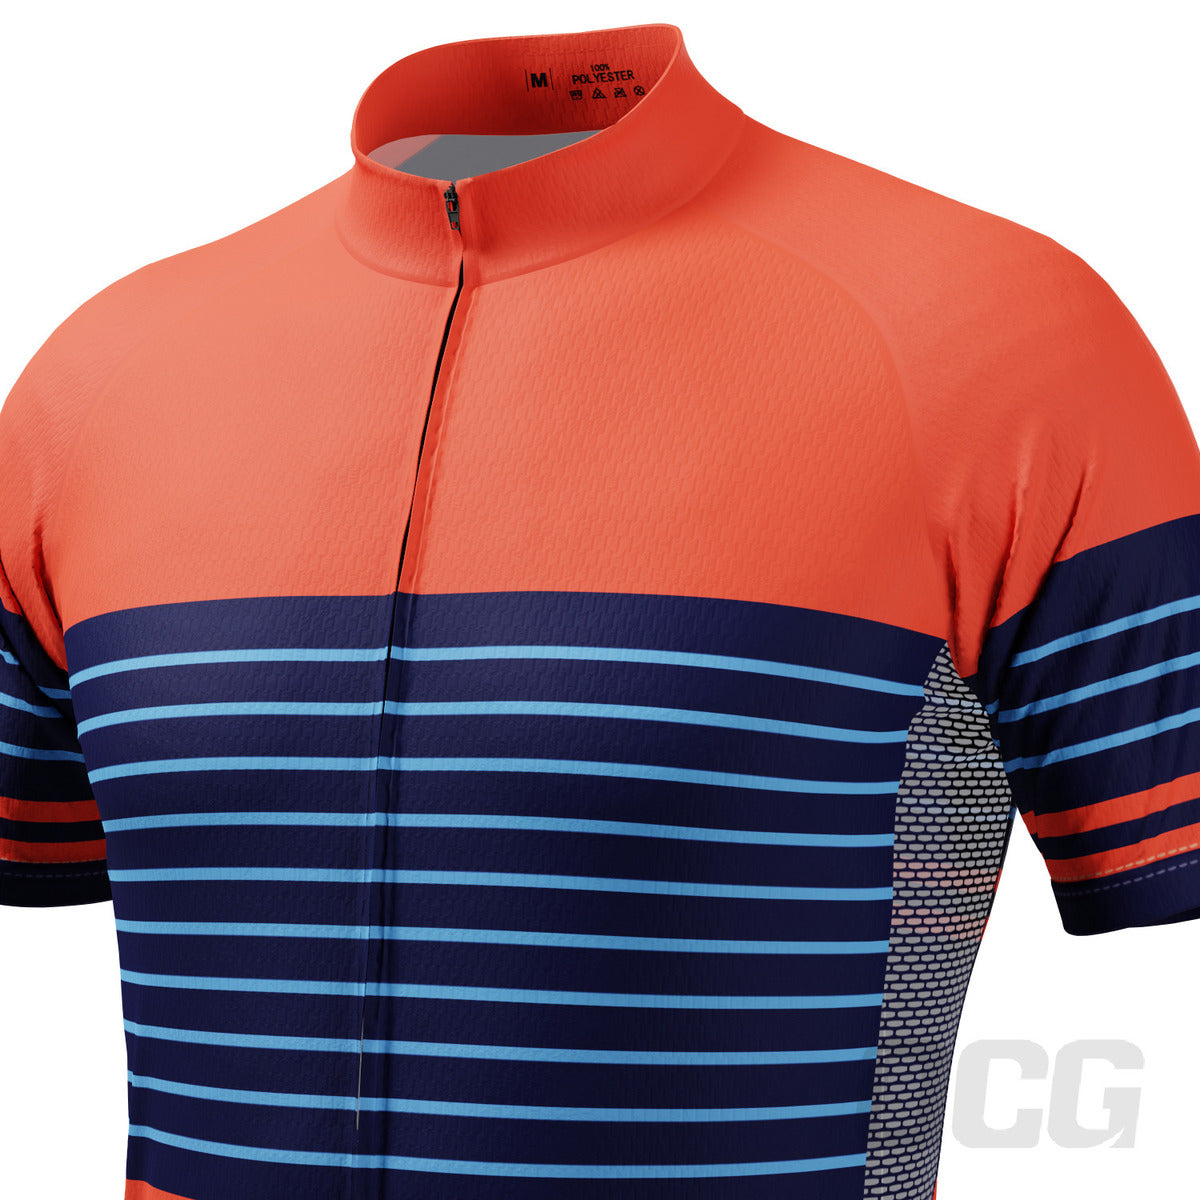 Men's Orange Blue Stripe Short Sleeve Cycling Jersey